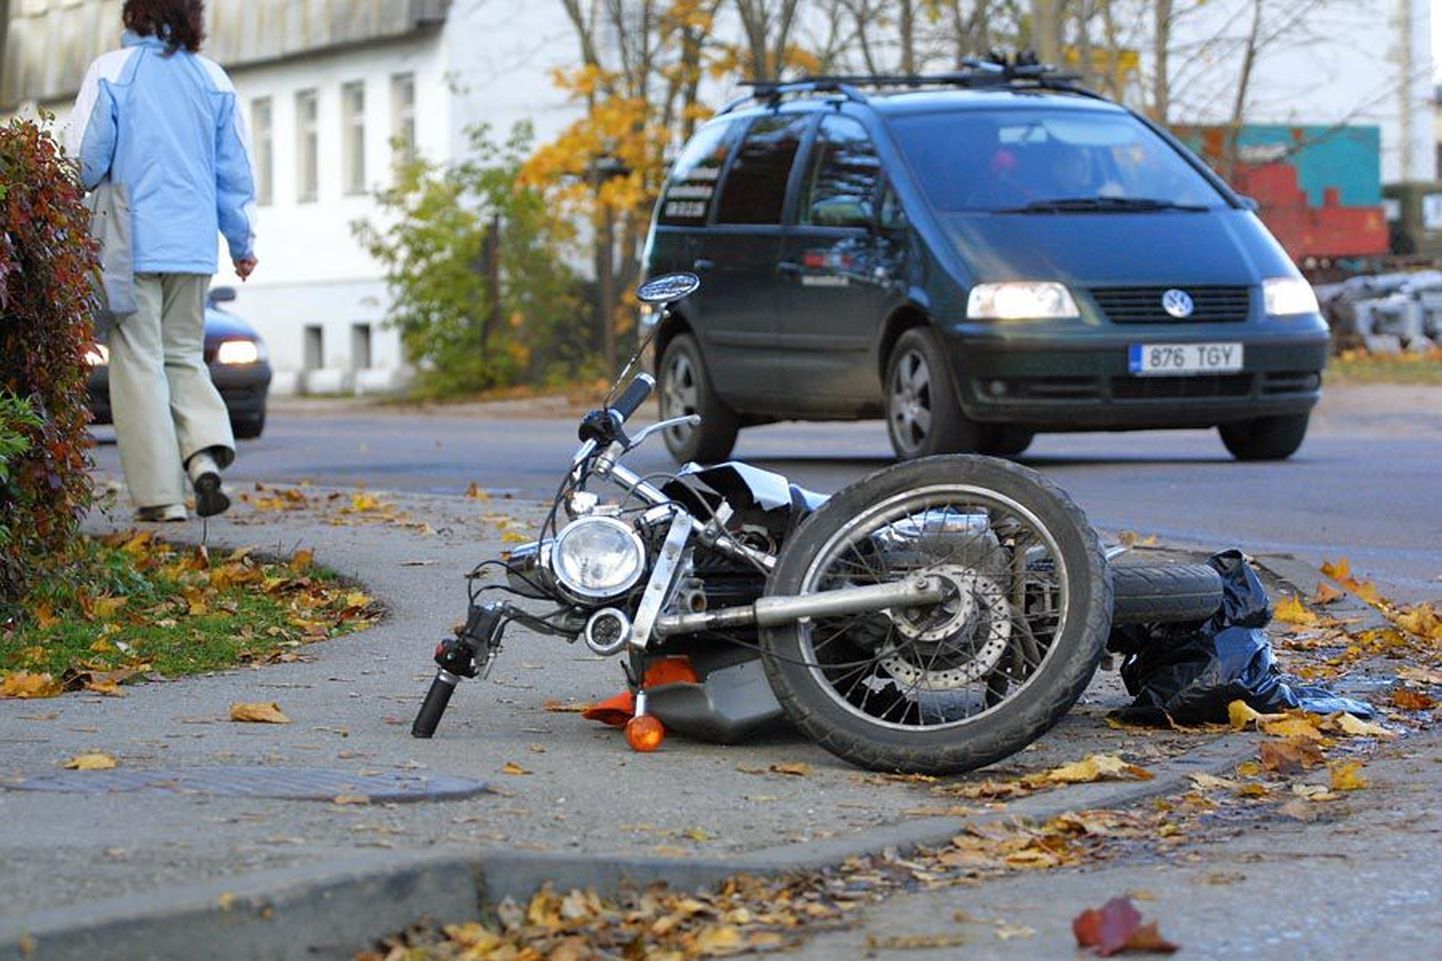 Viimati juhtus Reinu tee ja Riia maantee ristmikul õnnetus esmaspäeval, kui 19-aastane naine sõitis Honda Civicuga ette 53-aastase mehe juhitavale mopeedile.